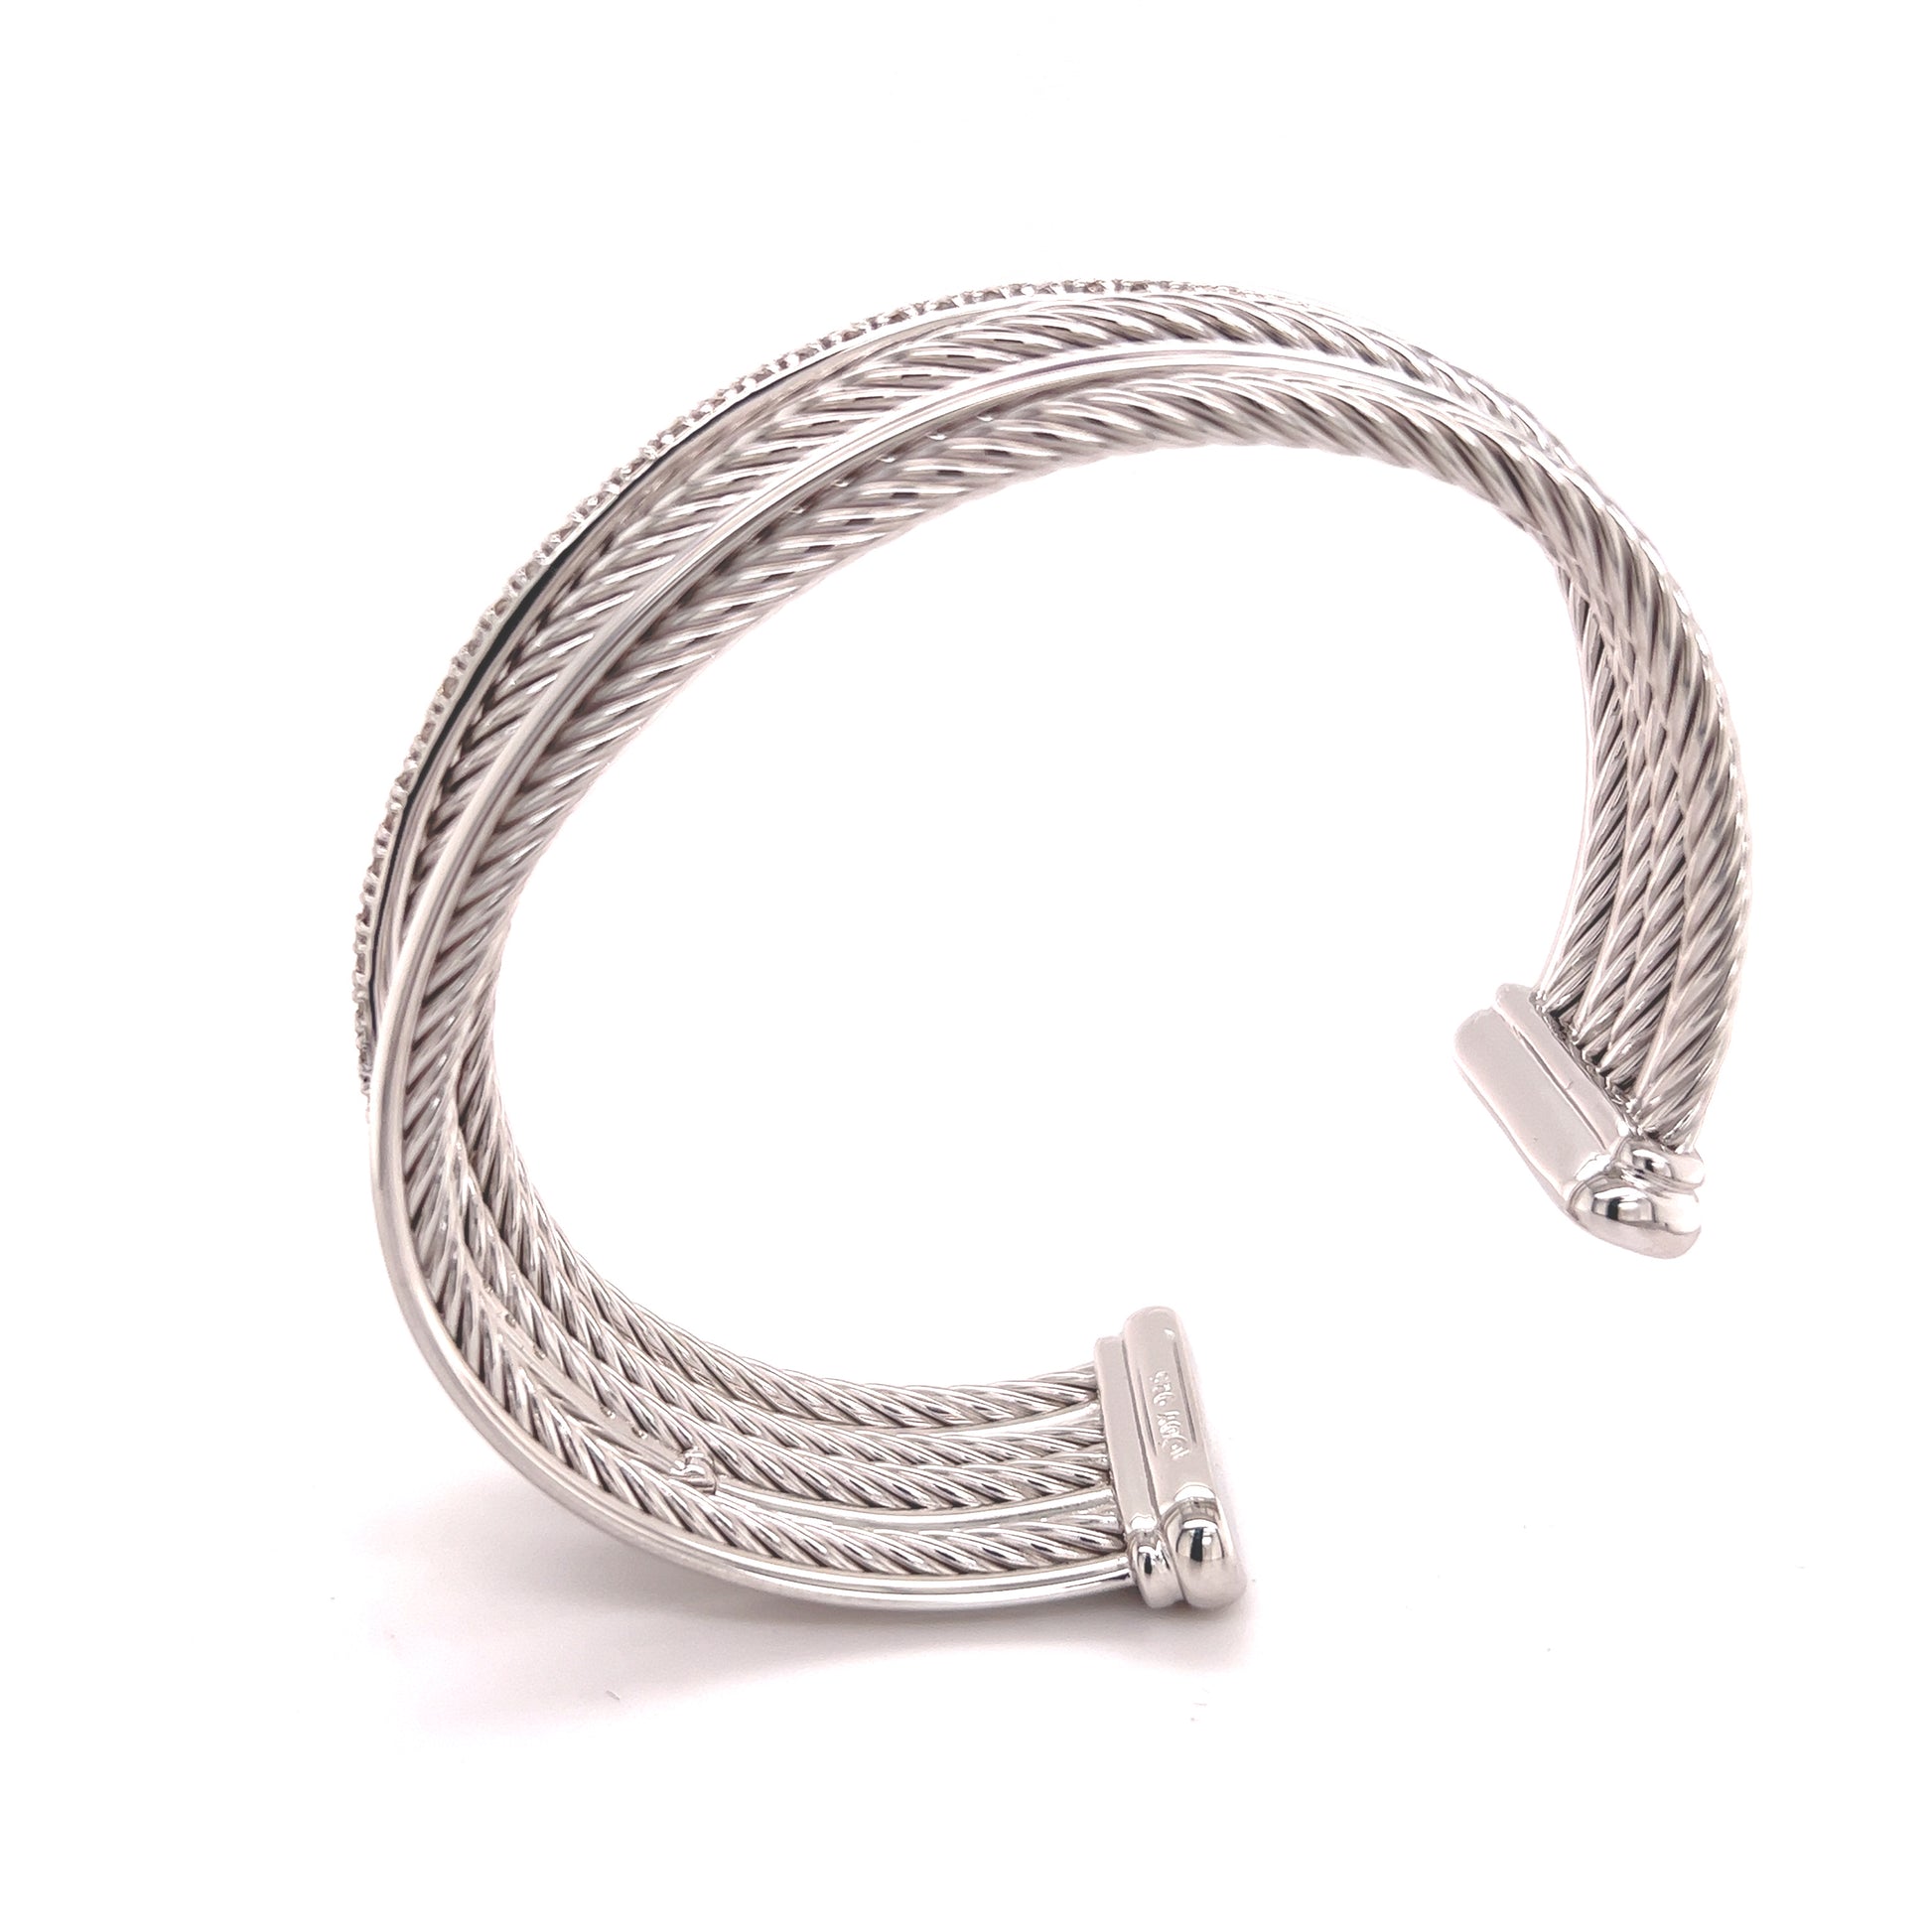 The Dayana Cuff Bracelet-Wire Cuff Bracelet